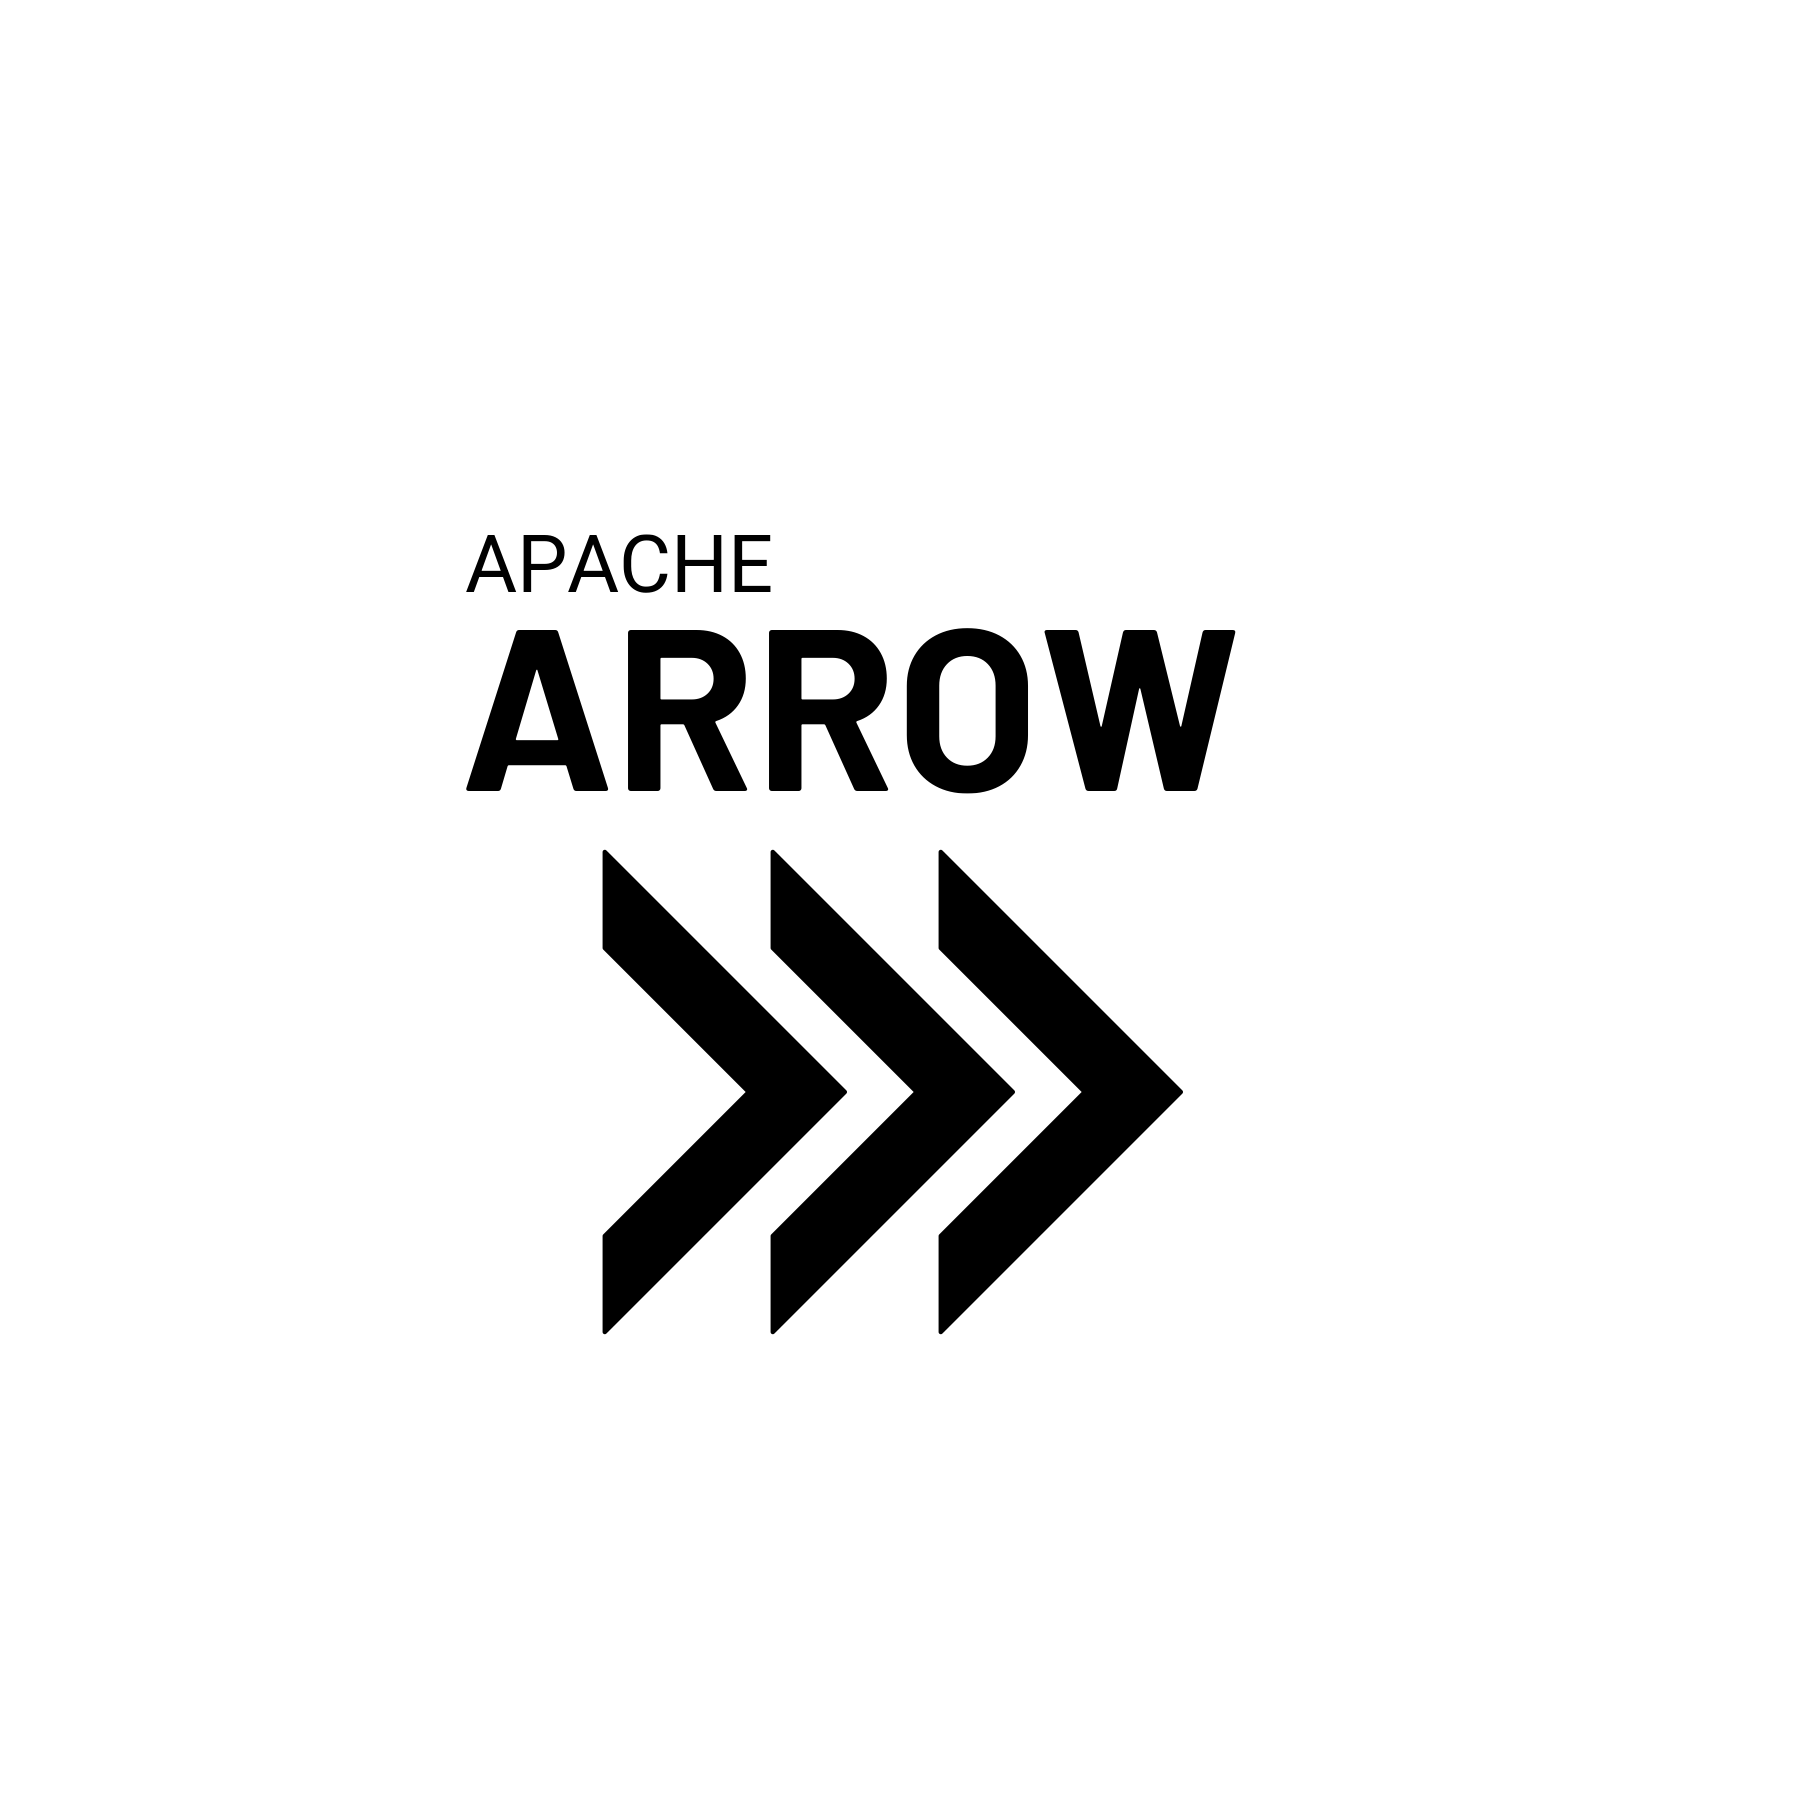 Thương hiệu Apache Arrow nổi tiếng với thiết kế đậm chất mạnh mẽ, trẻ trung và ấn tượng. Hãy xem hình ảnh liên quan để khám phá những điều thú vị về thương hiệu này và tìm hiểu về sức mạnh của logo của Arrow.